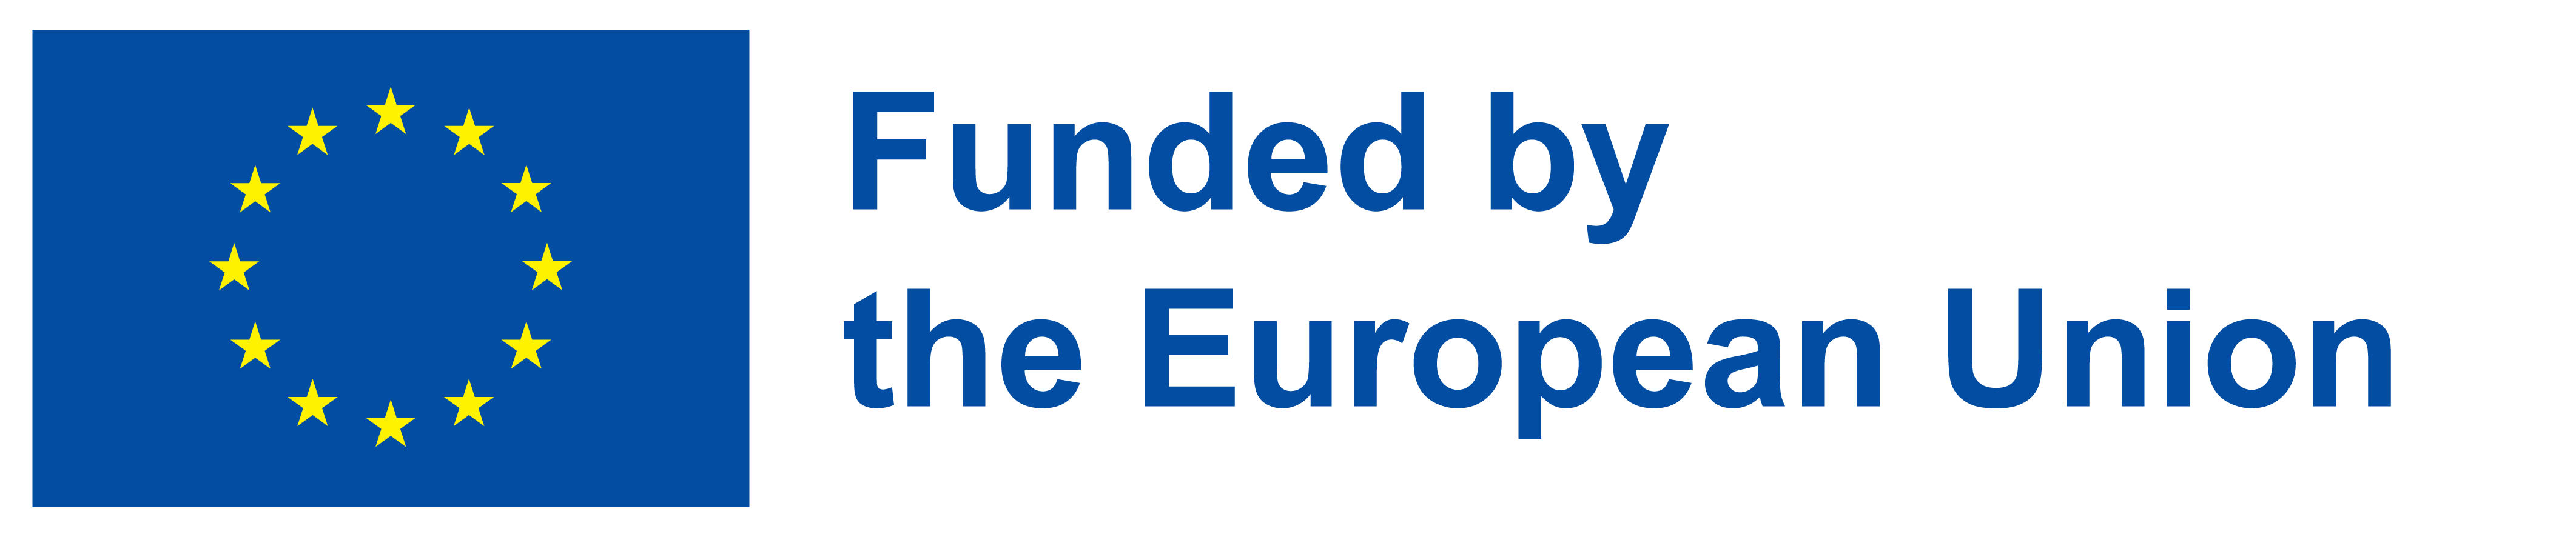 13B priedas. EU emblema_H_funded (1)